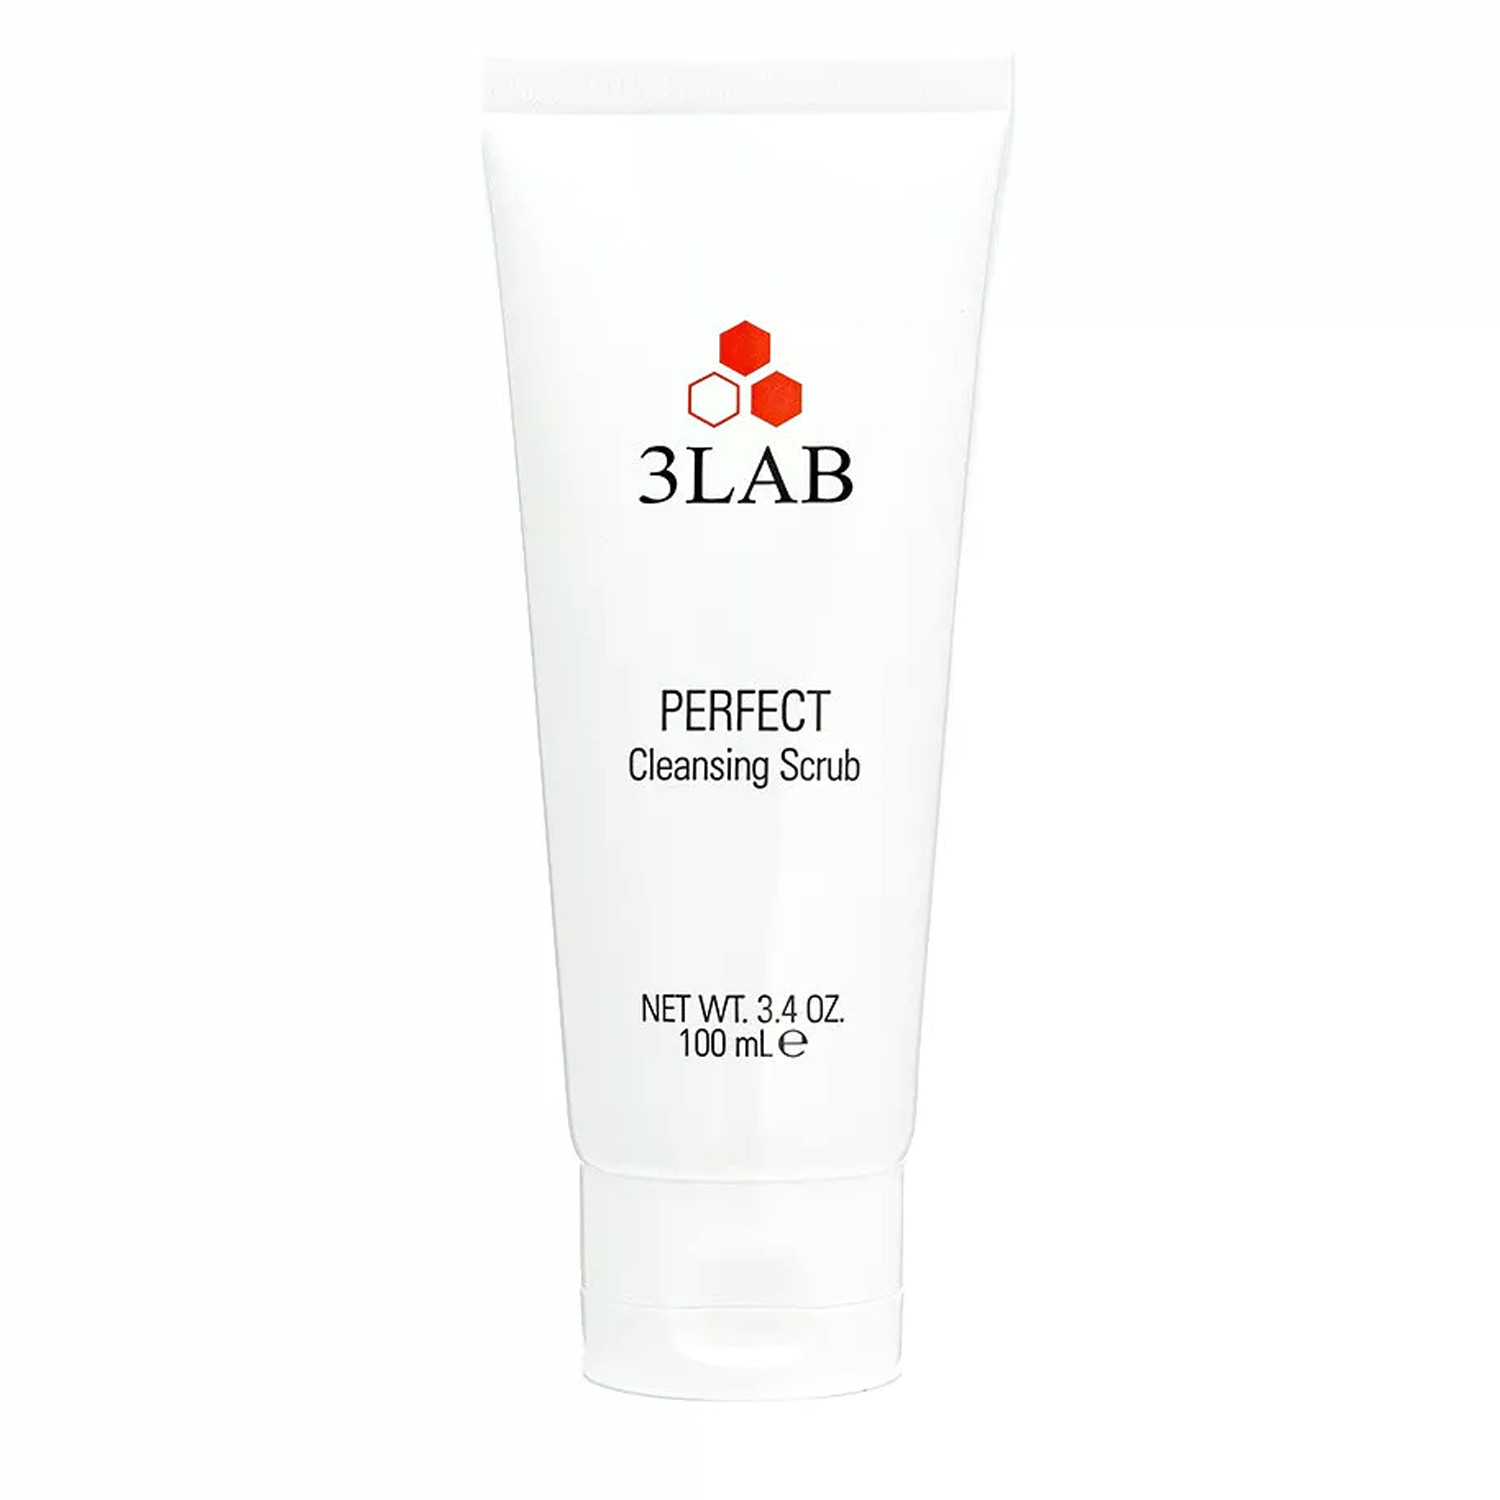 Відгуки про 3LAB Perfect Cleansing Scrub Очищающий скраб для лица